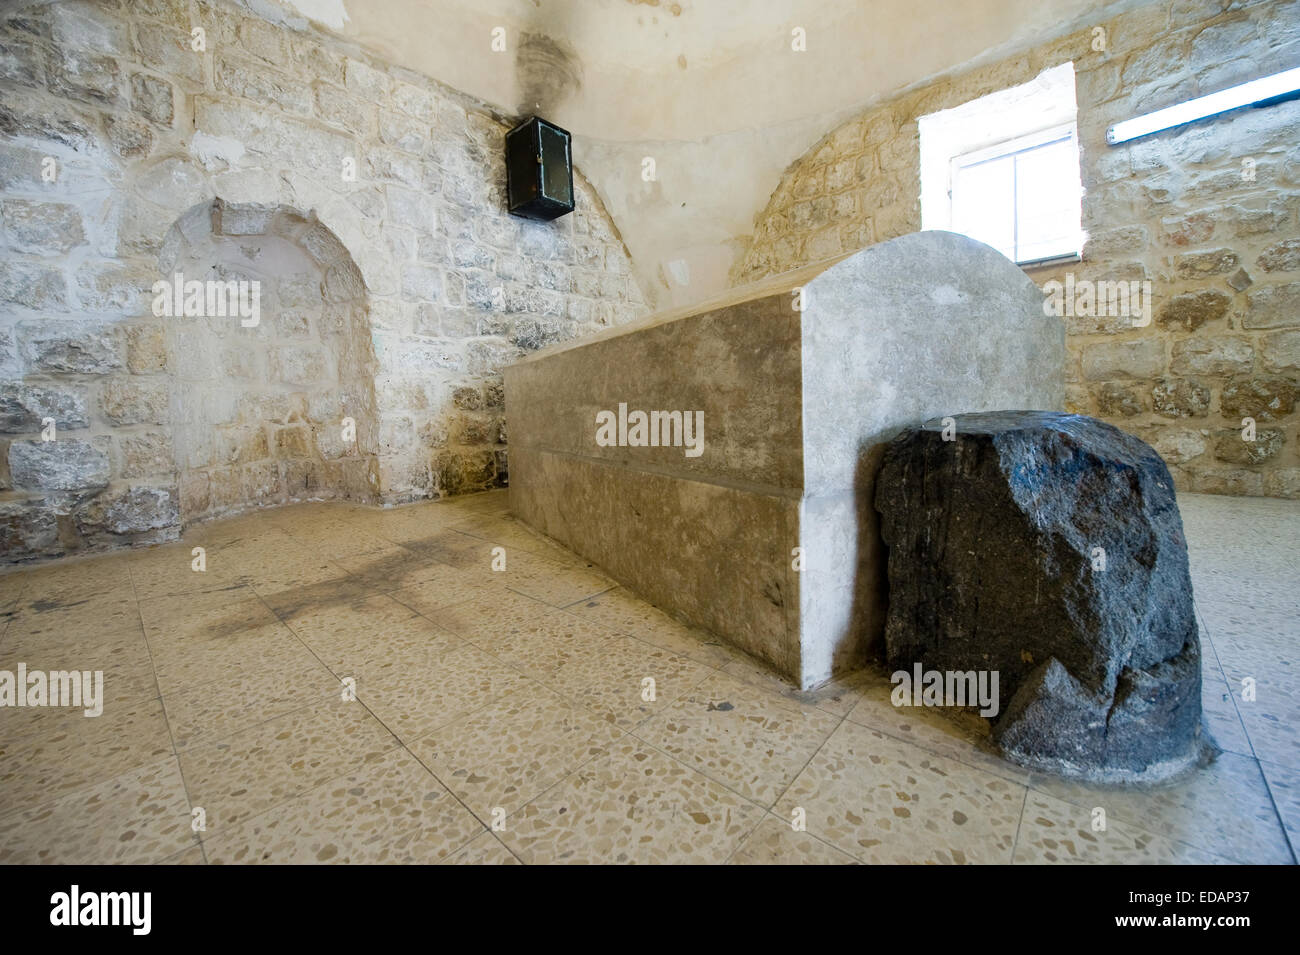 Le tombeau du patriarche Joseph à Naplouse. Joseph est le fils de Jacob. Il y est enterré avec ses deux fils, Manassé et Éphraïm Banque D'Images